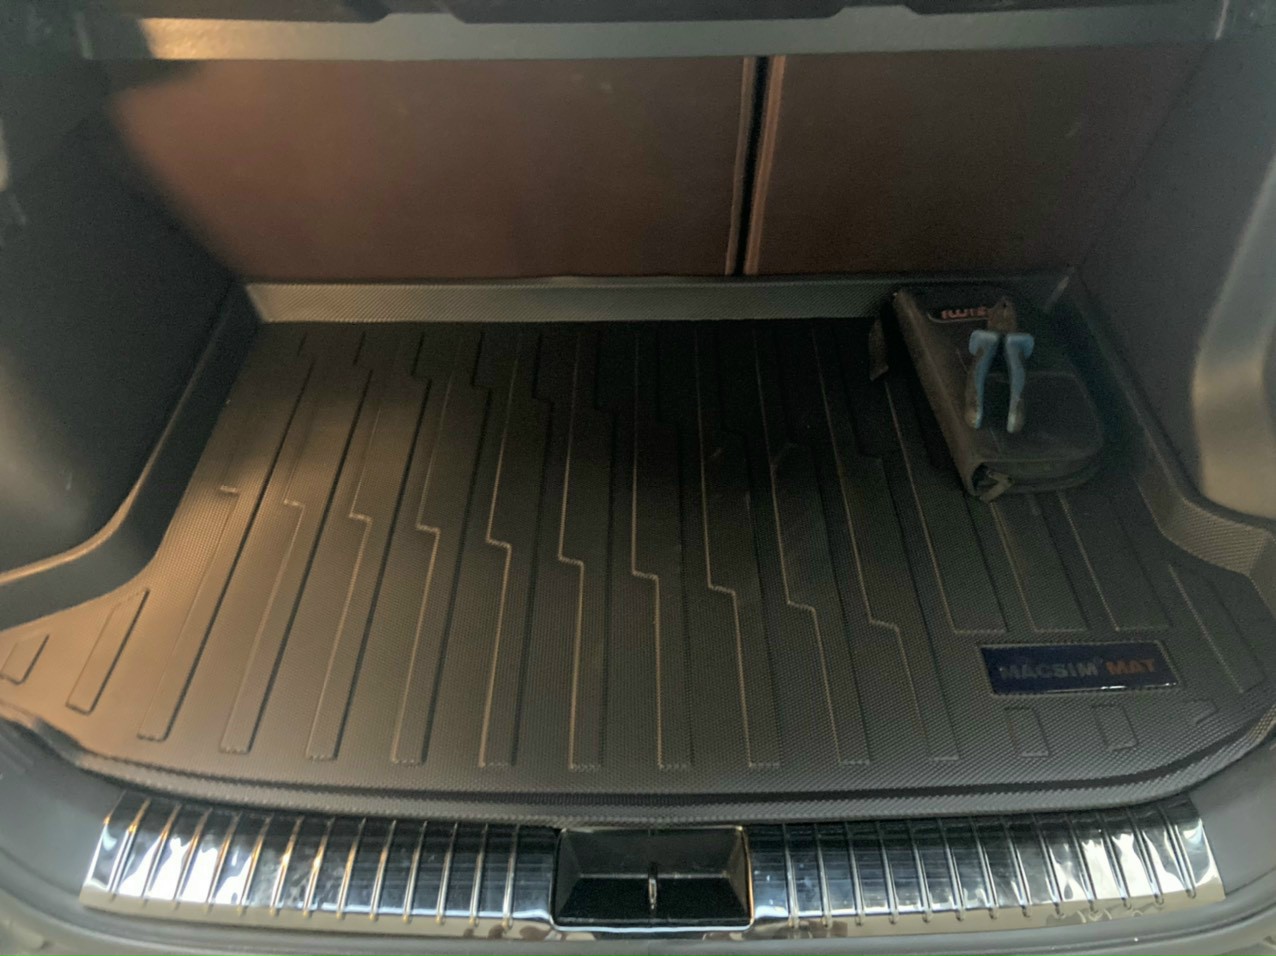 Thảm lót cốp xe ô tô dành cho Hyundai Kona 2018+ nhãn hiệu Macsim chất liệu TPV cao cấp màu đen(DT007